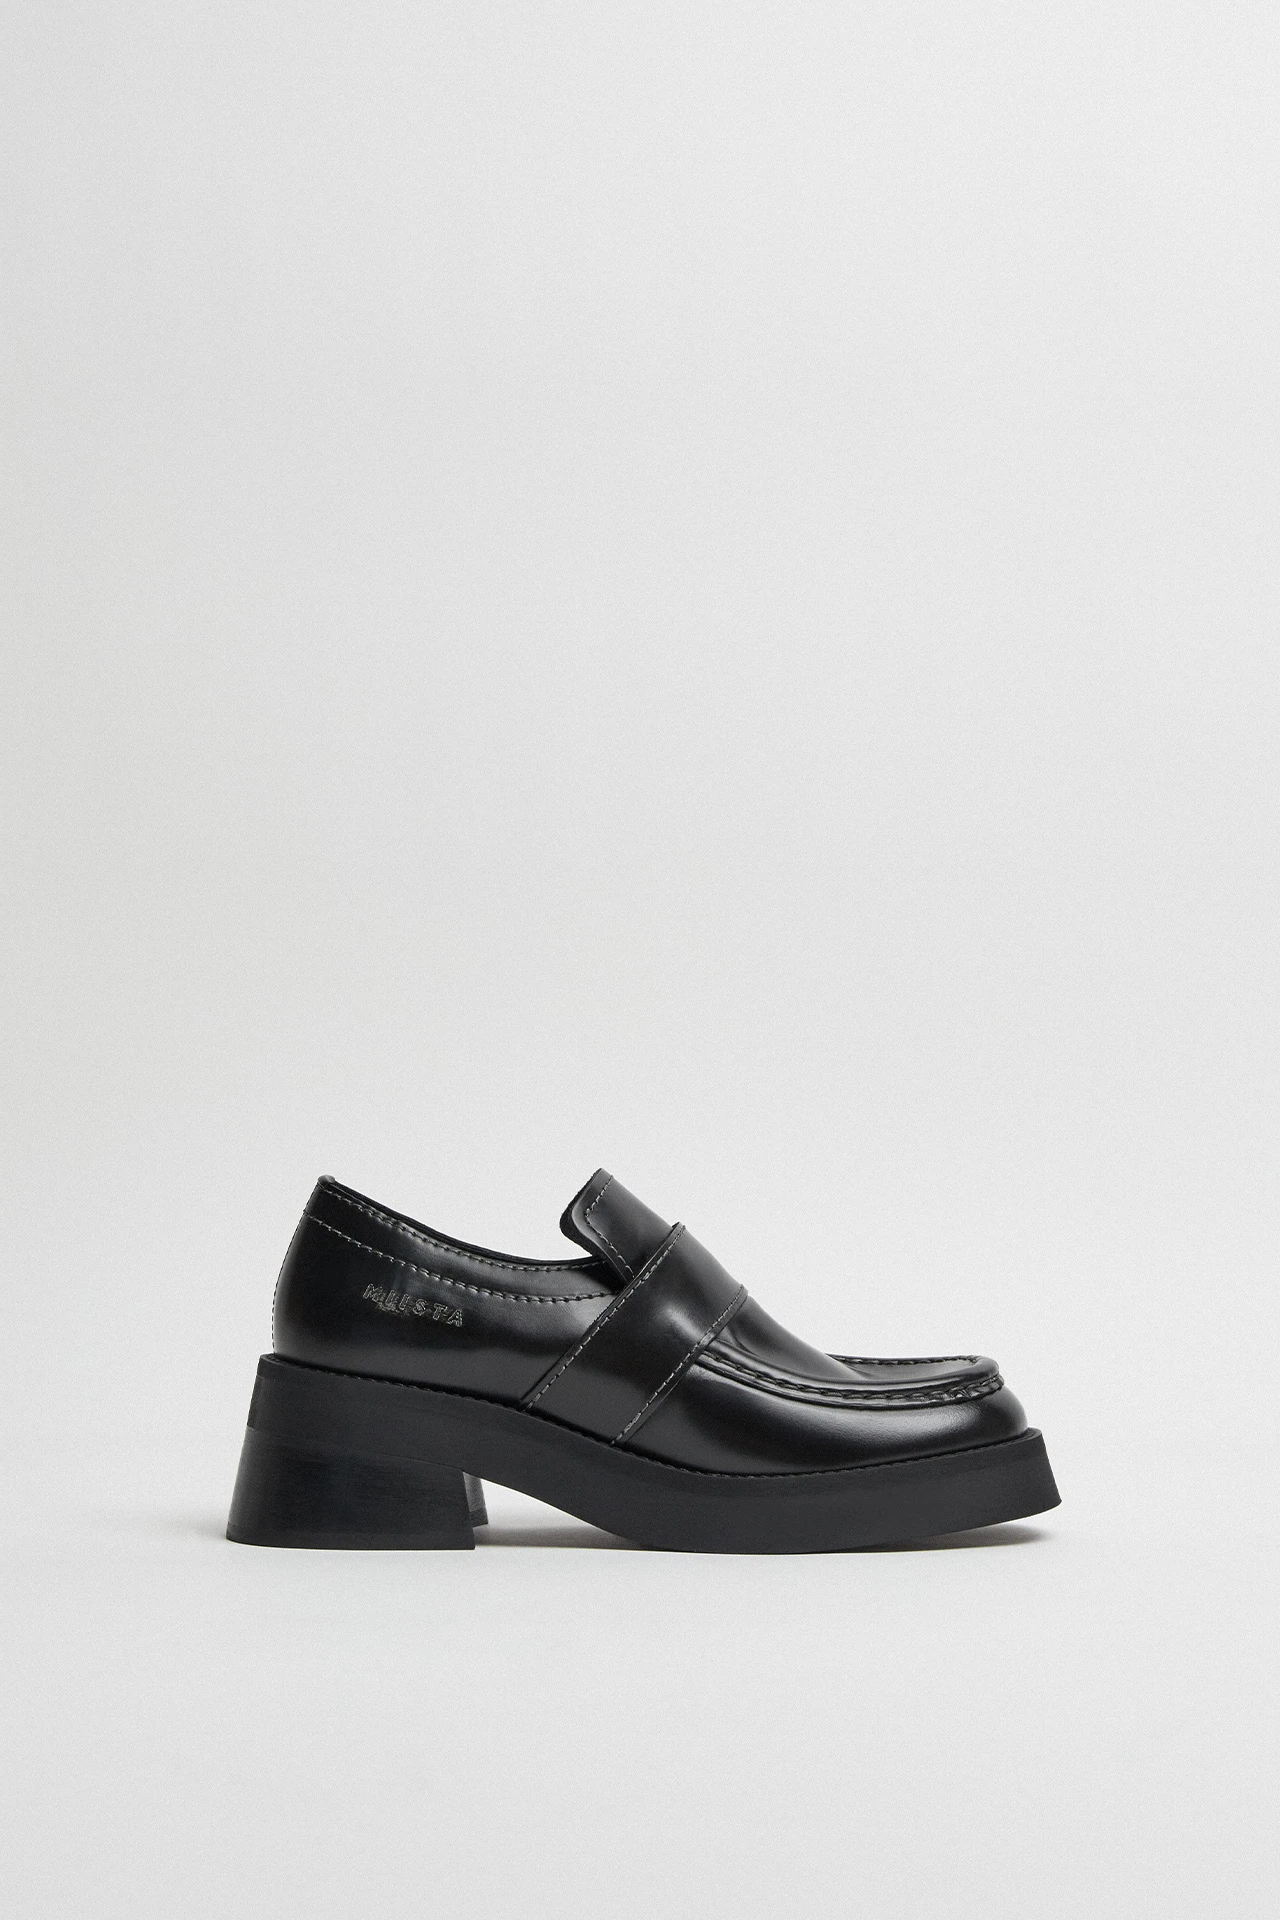 E8-lib-black-loafers-01